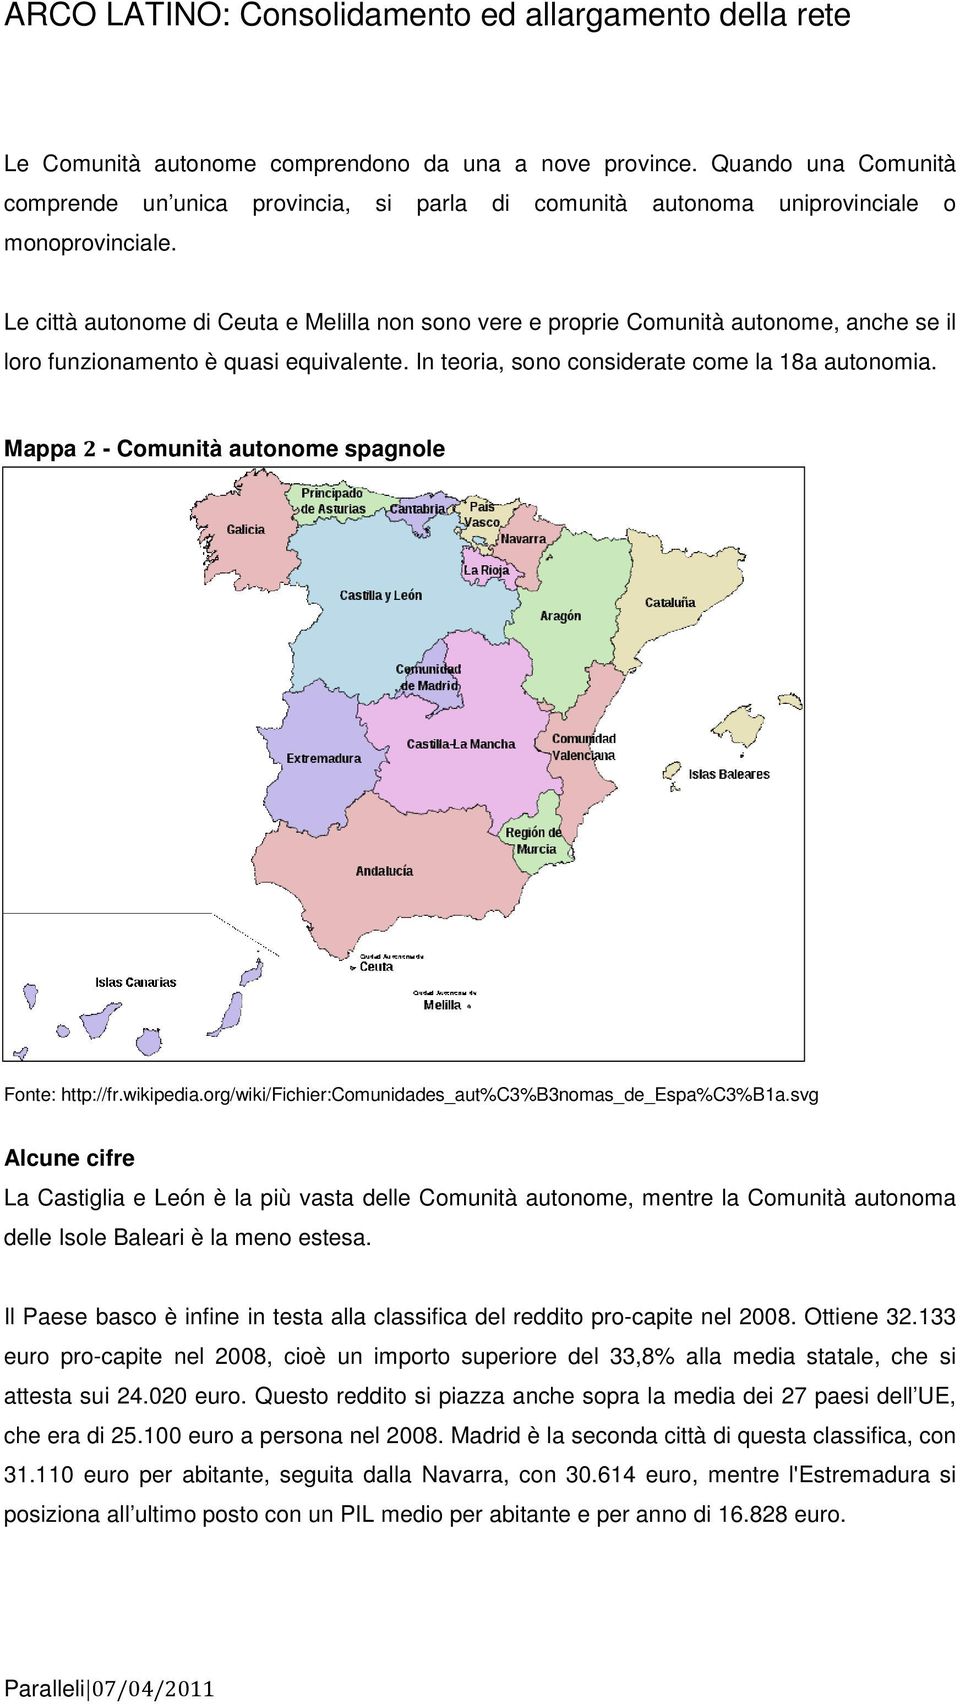 Le città autonome di Ceuta e Melilla non sono vere e proprie Comunità autonome, anche se il loro funzionamento è quasi equivalente. In teoria, sono considerate come la 18a autonomia.